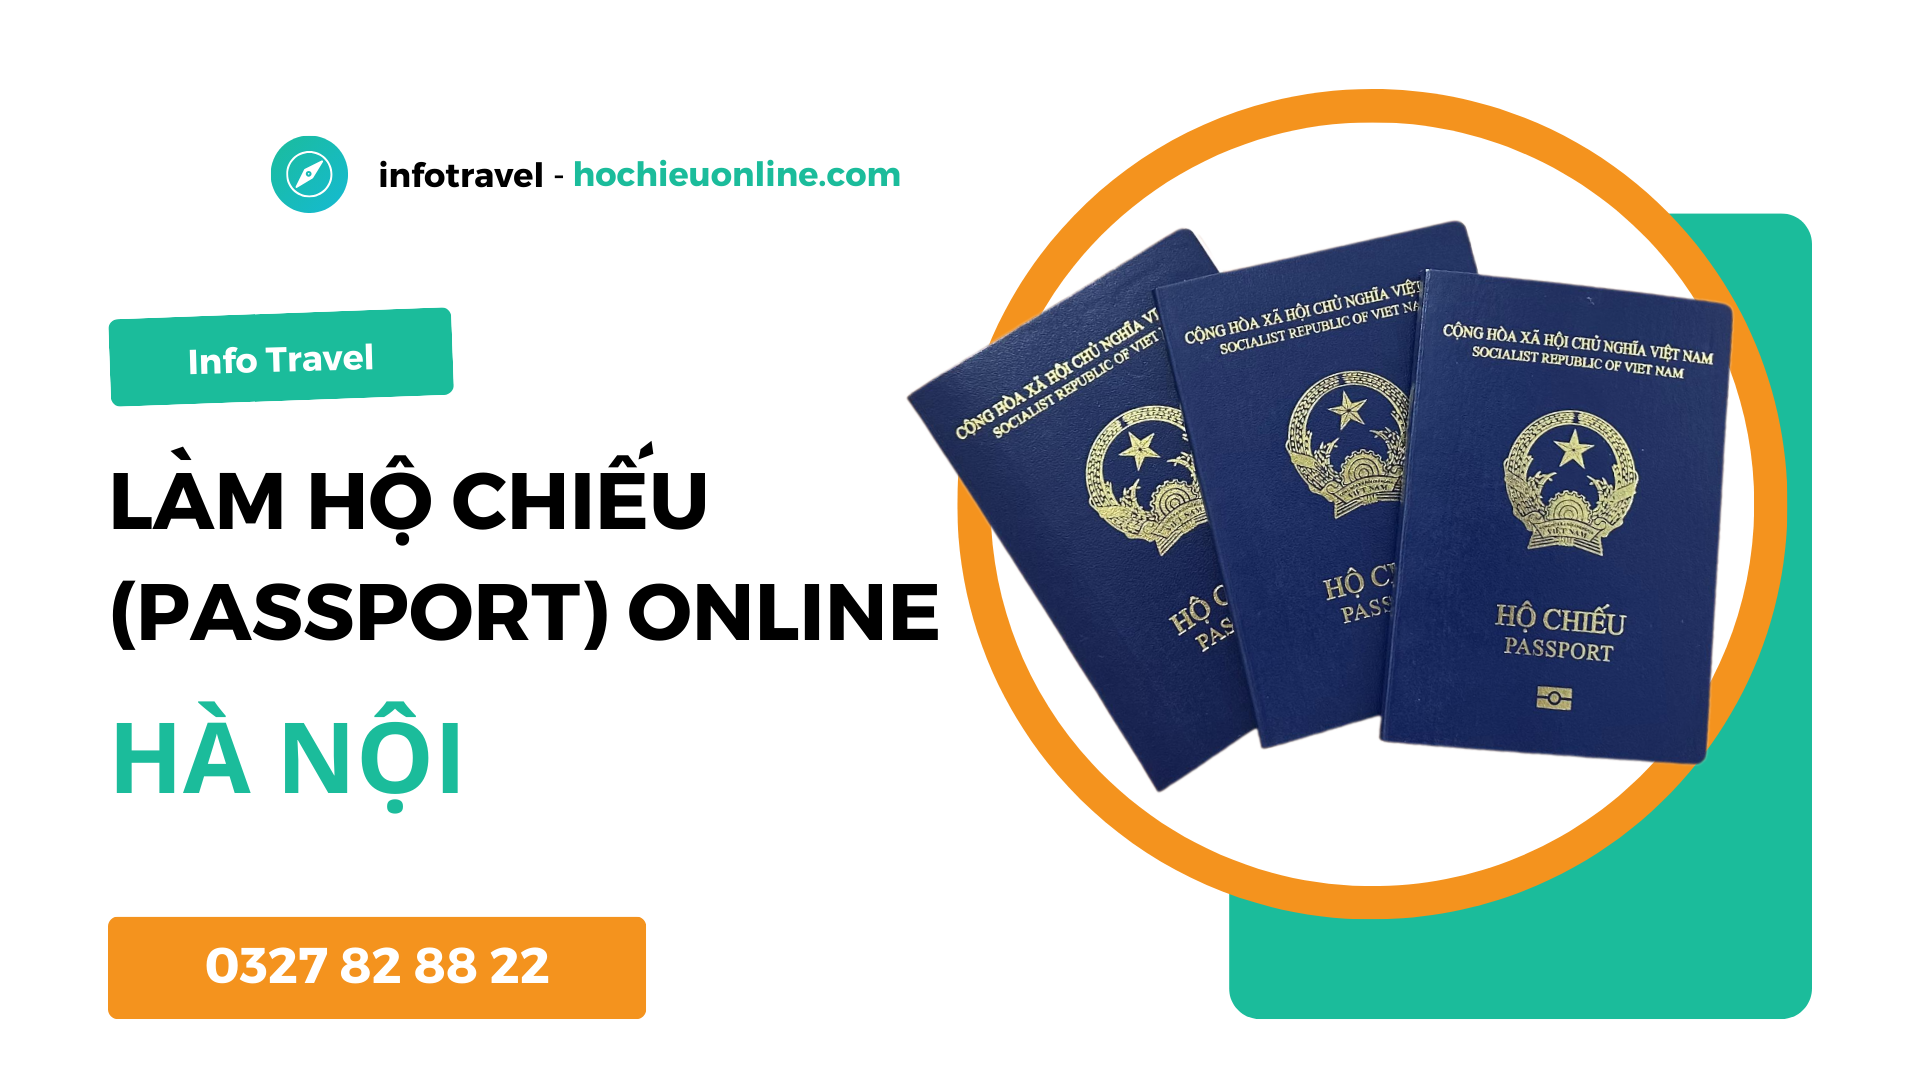 Làm hộ chiếu passport online tại thành phố Hà Nội